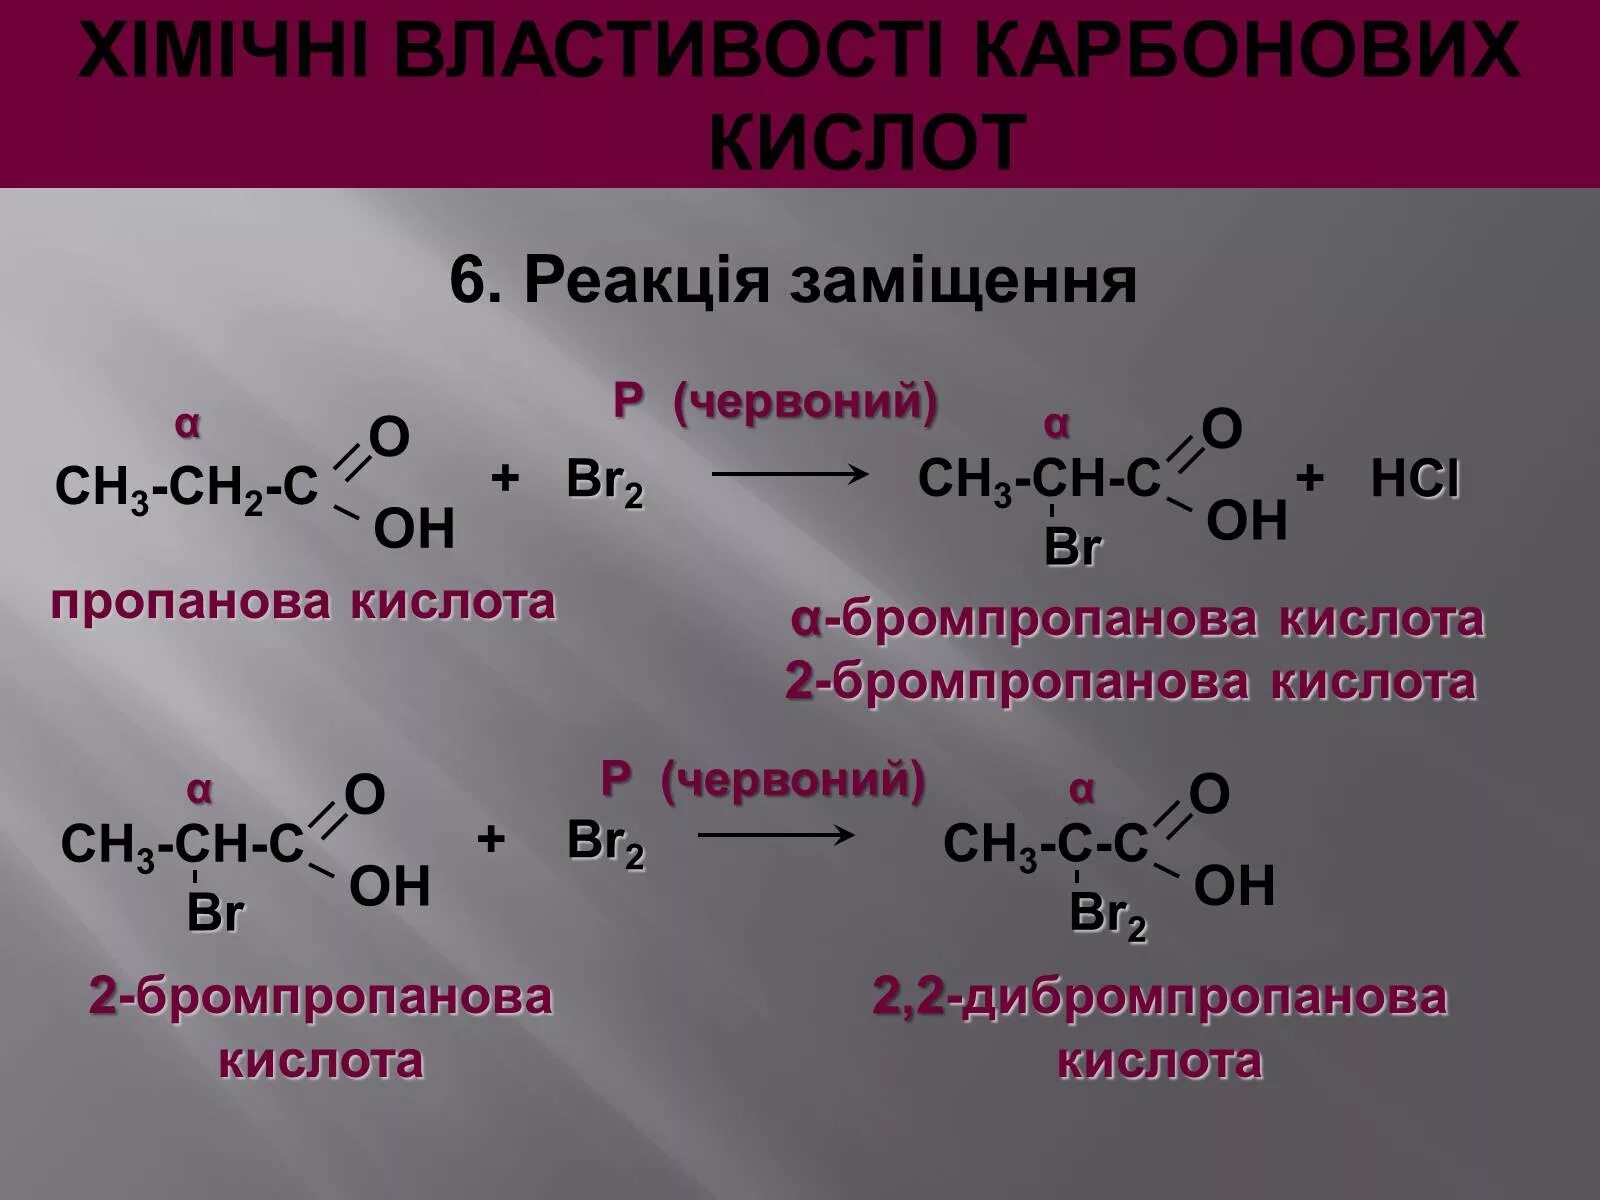 Бромпропановая кислота. Циклогексадикарбоновая кислота. 2 Бромпропановая кислота. Бутаналь с циановодородной кислотой. Бутановая кислота образуется